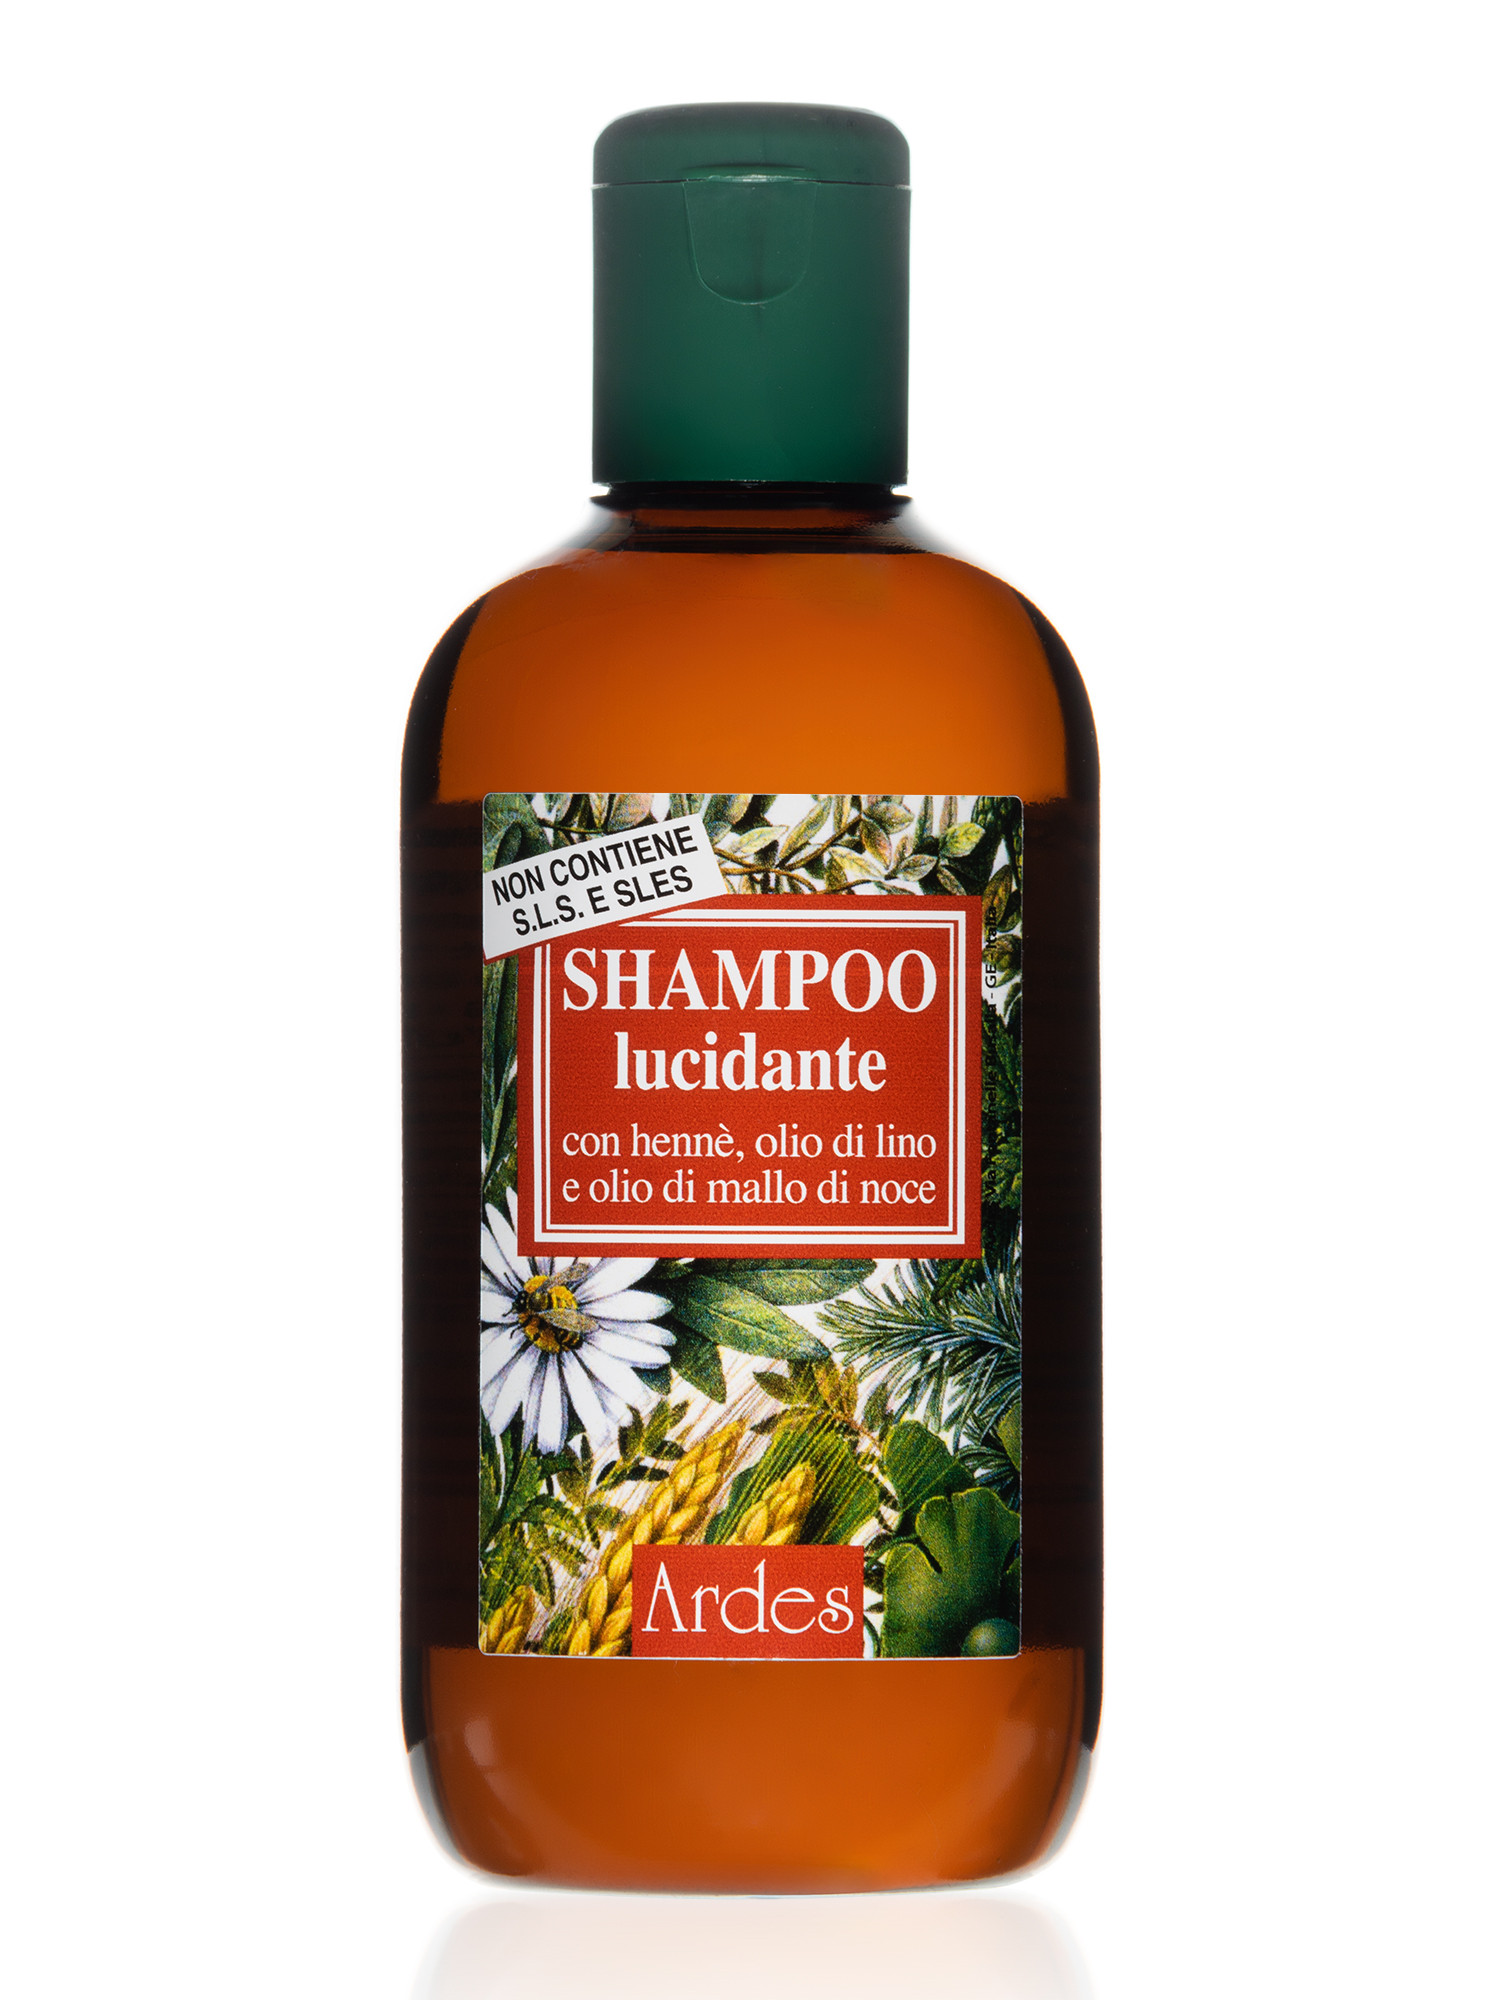 Шампунь для блеска волос Ardes Shampoo lucidante, 250 мл регенерирующий шампунь для окрашенных и мелированных волос bulboshap f27v10170 250 мл